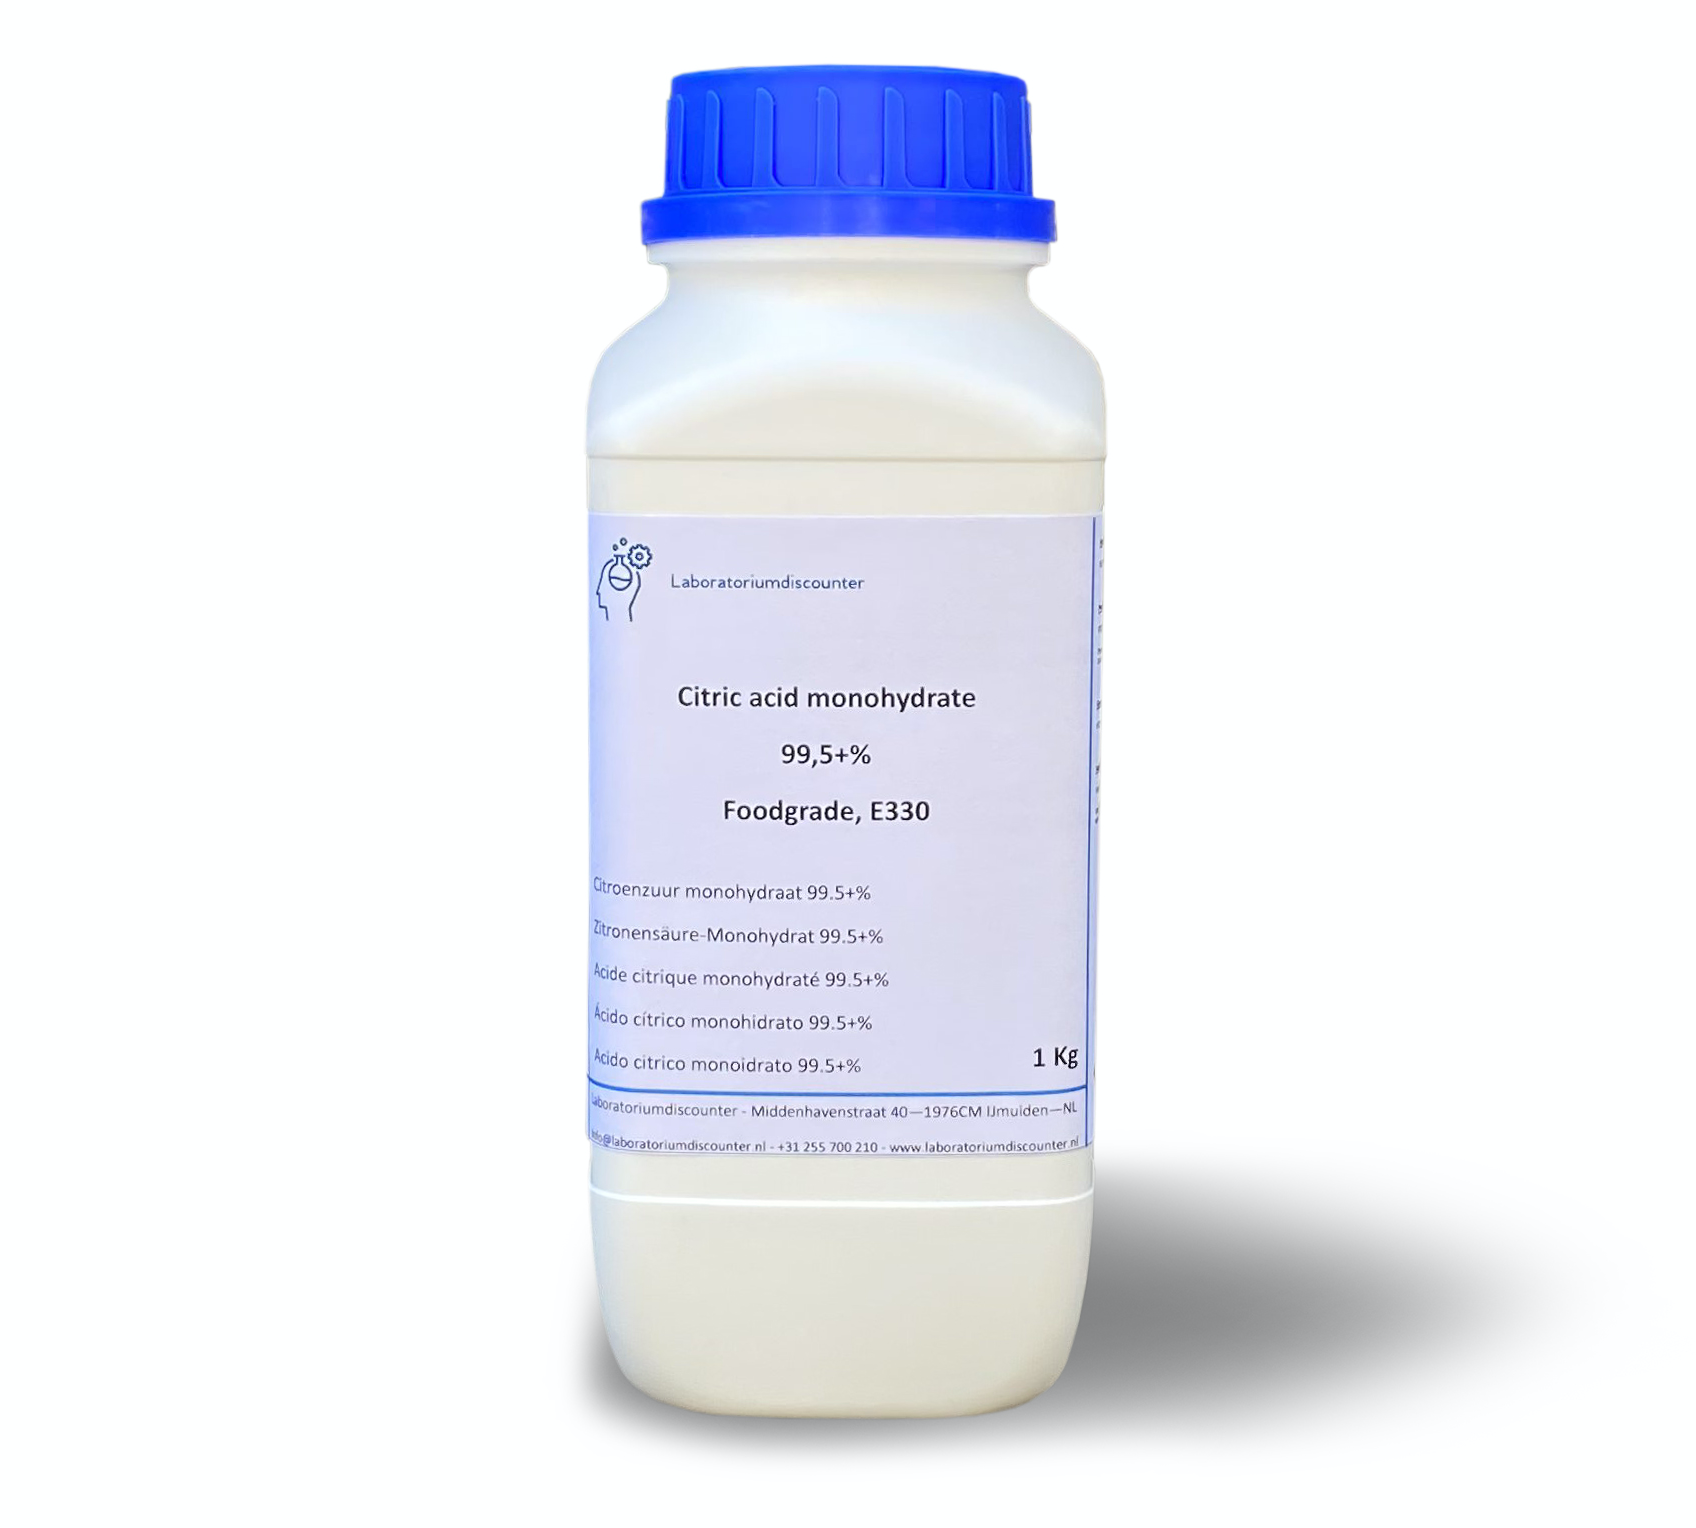 Ácido cítrico monohidrato CAS 5949-29-1